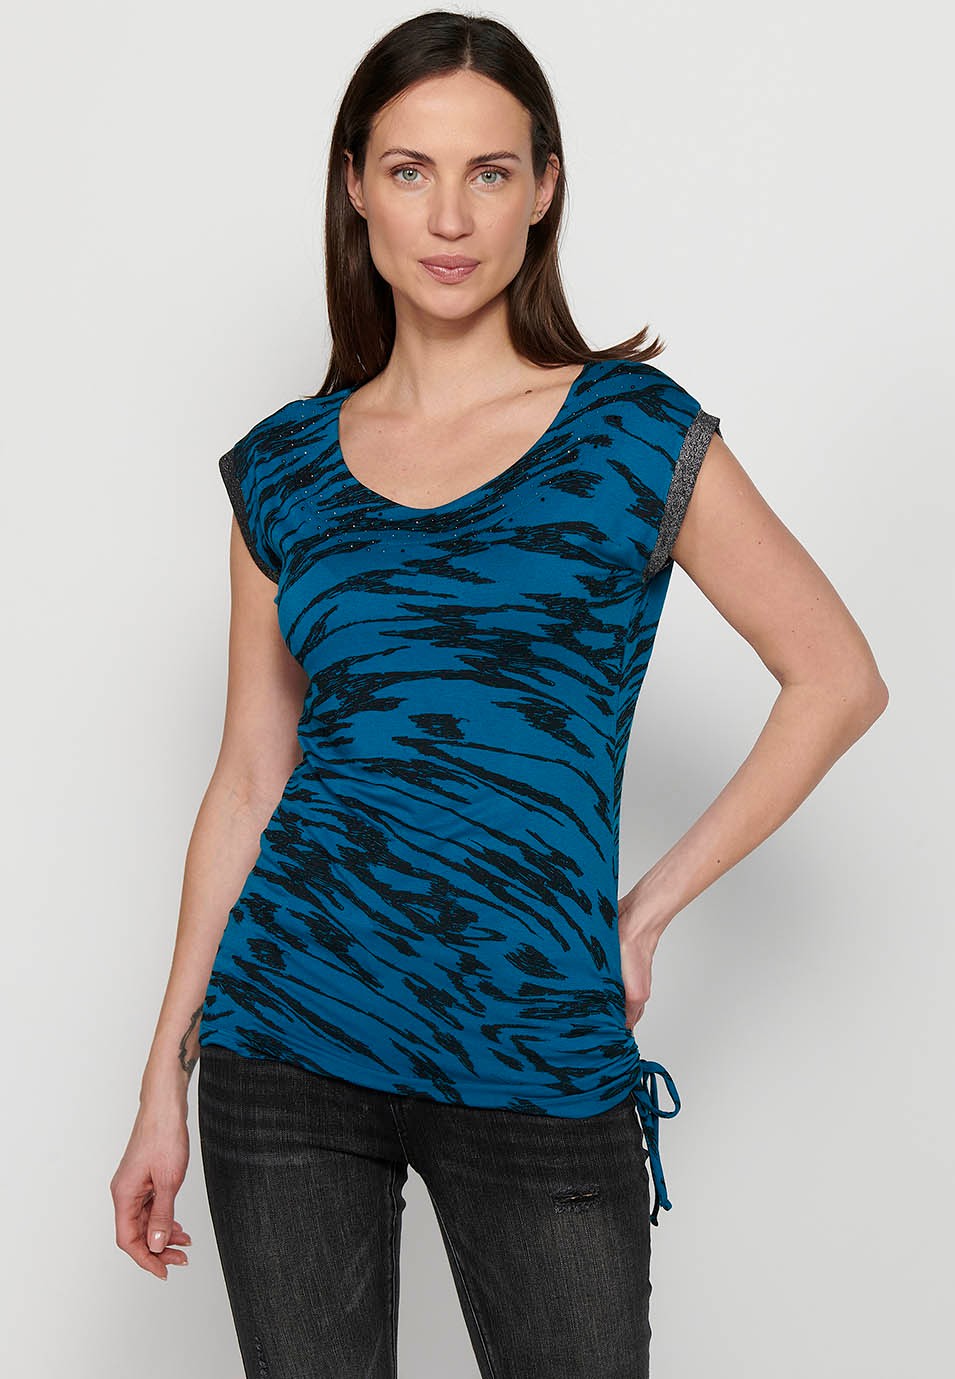 Camiseta sin mangas estampada, cuello redondo, color azul para mujer